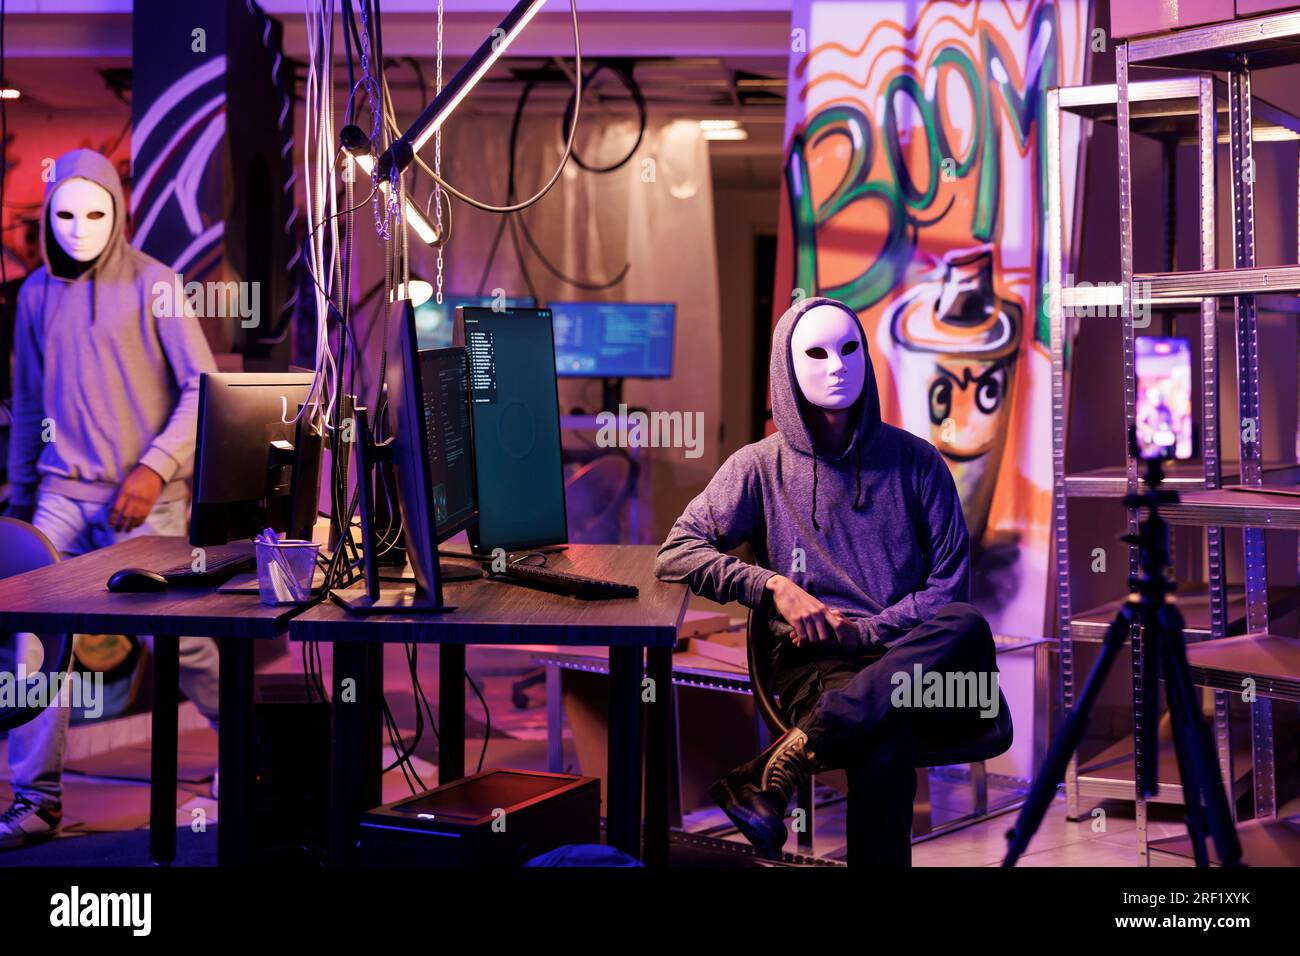 Anonymer Hacker in Masken, der ein Bedrohungsvideo auf einer Smartphone-Kamera in einem verlassenen Lagerhaus aufnimmt. Cyberkriminelle brechen Gesetze, während sie Internetbetrug und Cyberangriffe auf Mobiltelefone streamen Stockfoto